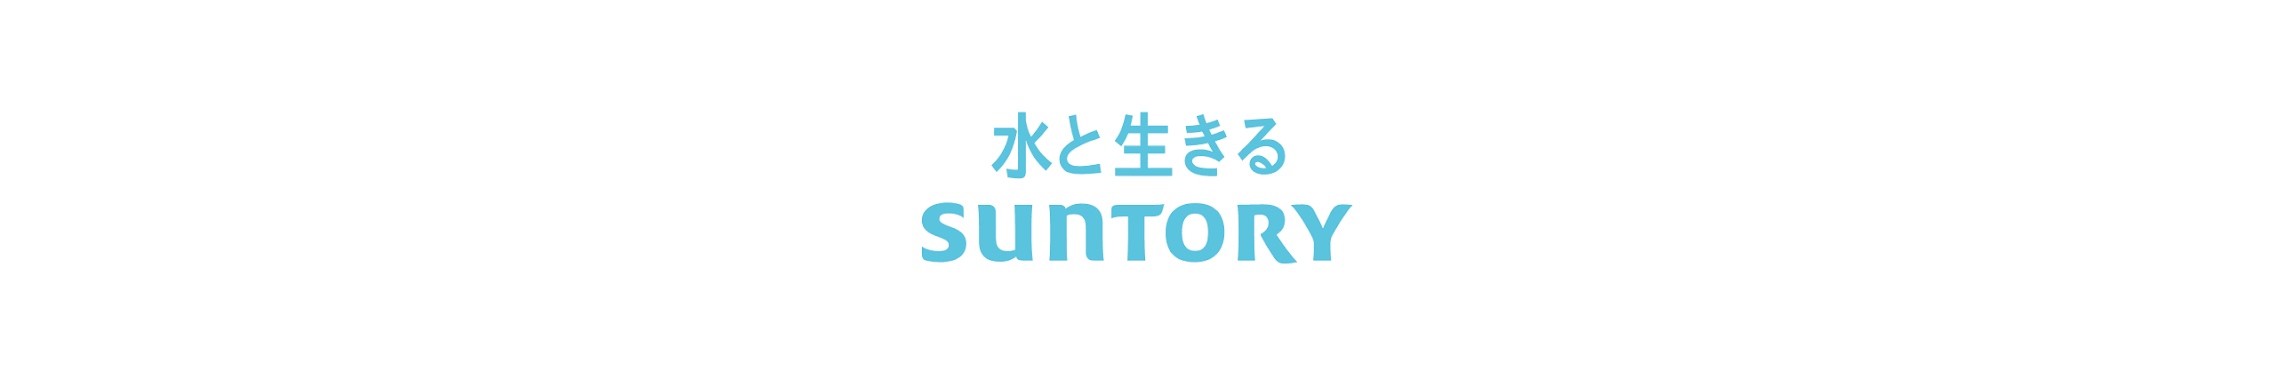 サントリー公式チャンネル Suntory Youtube Channel Analytics And Report Powered By Noxinfluencer Mobile